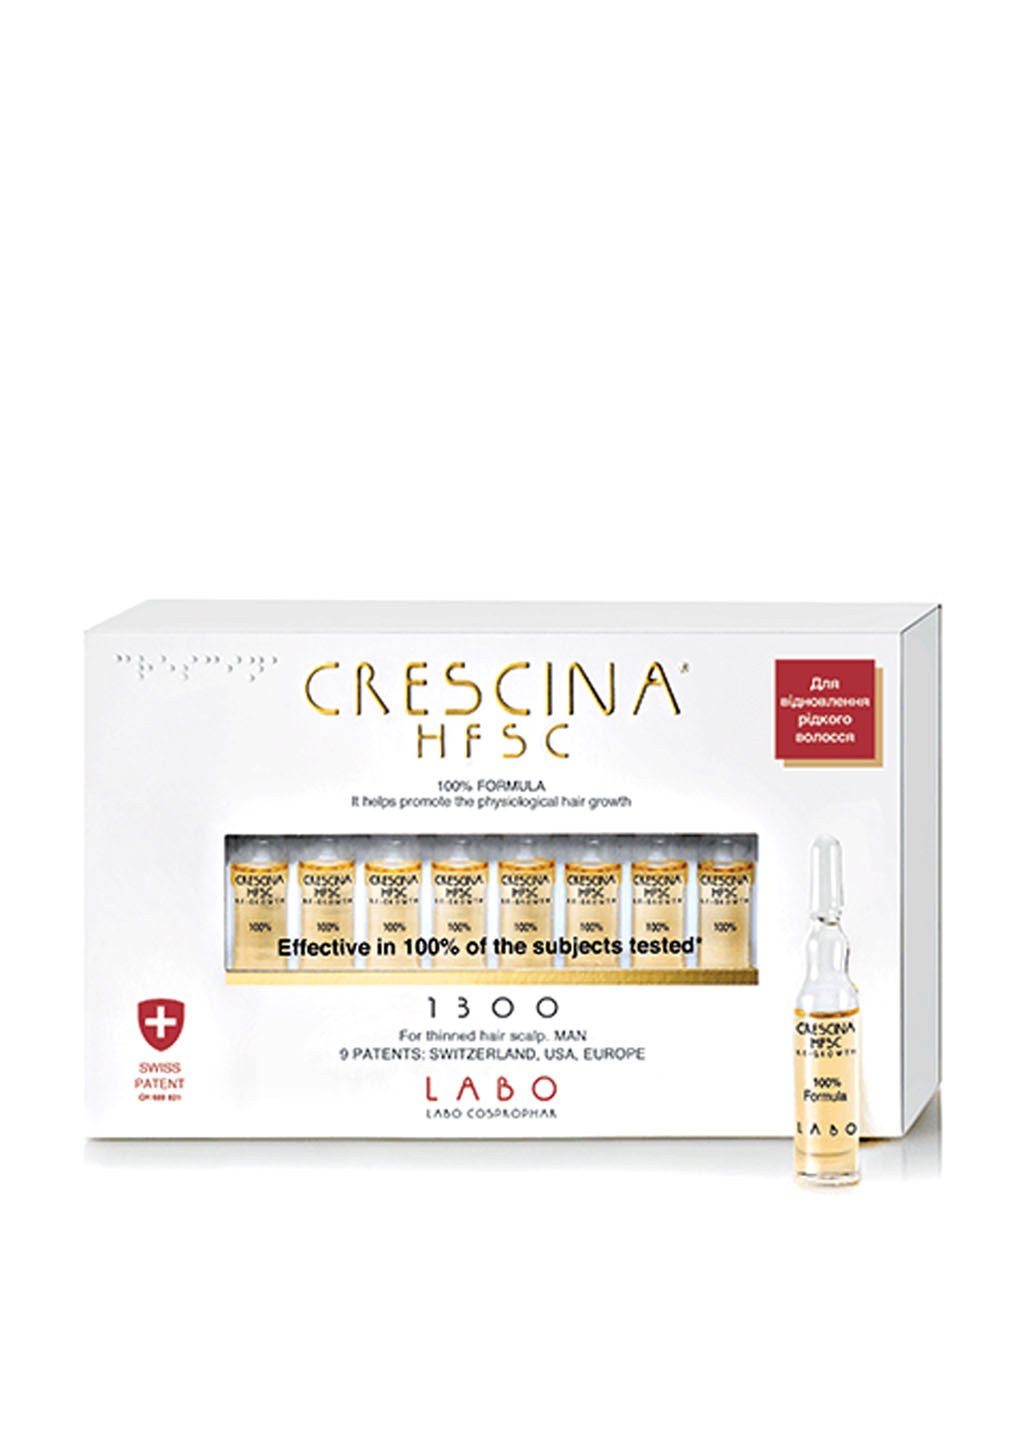 Средство для восстановления роста волос HFSC Re-Growth 1300, 20х3,5 мл Crescina (89111850)